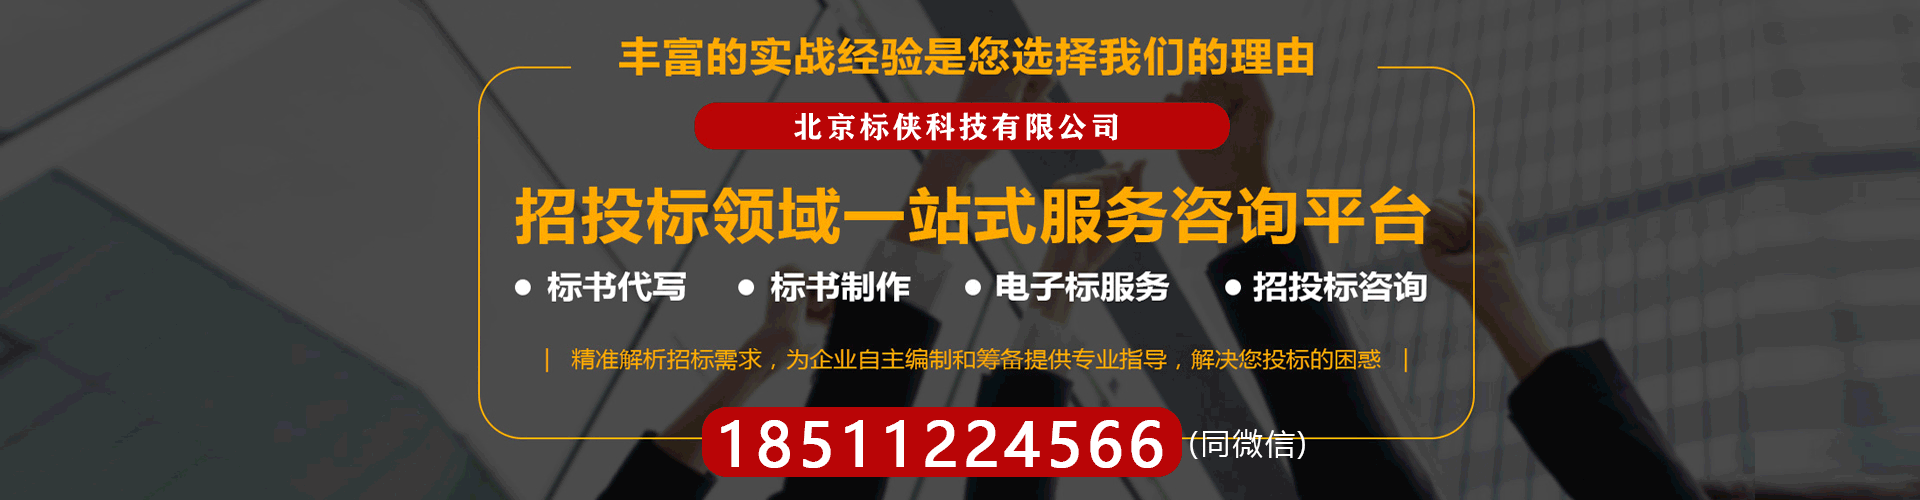 [北京会计师事务所]-北京财务审计报告 24小时可出,专业高效收费合理-标侠科技